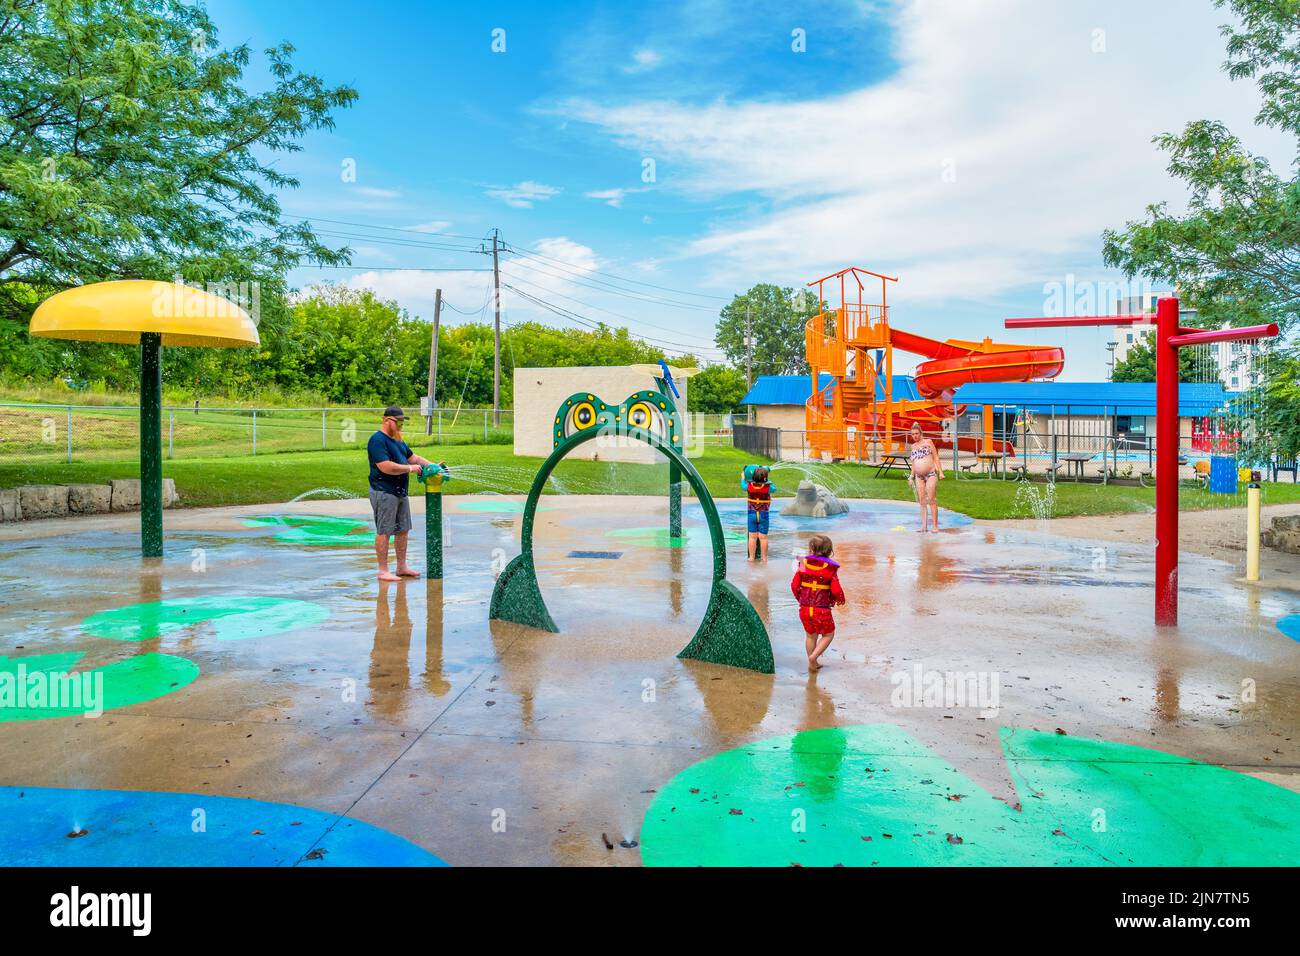 La famille aime les jeux aquatiques dans le parc d'attractions familial Earl Haig, qui est un parc aquatique public, à Brantford, Ontario, Canada Banque D'Images